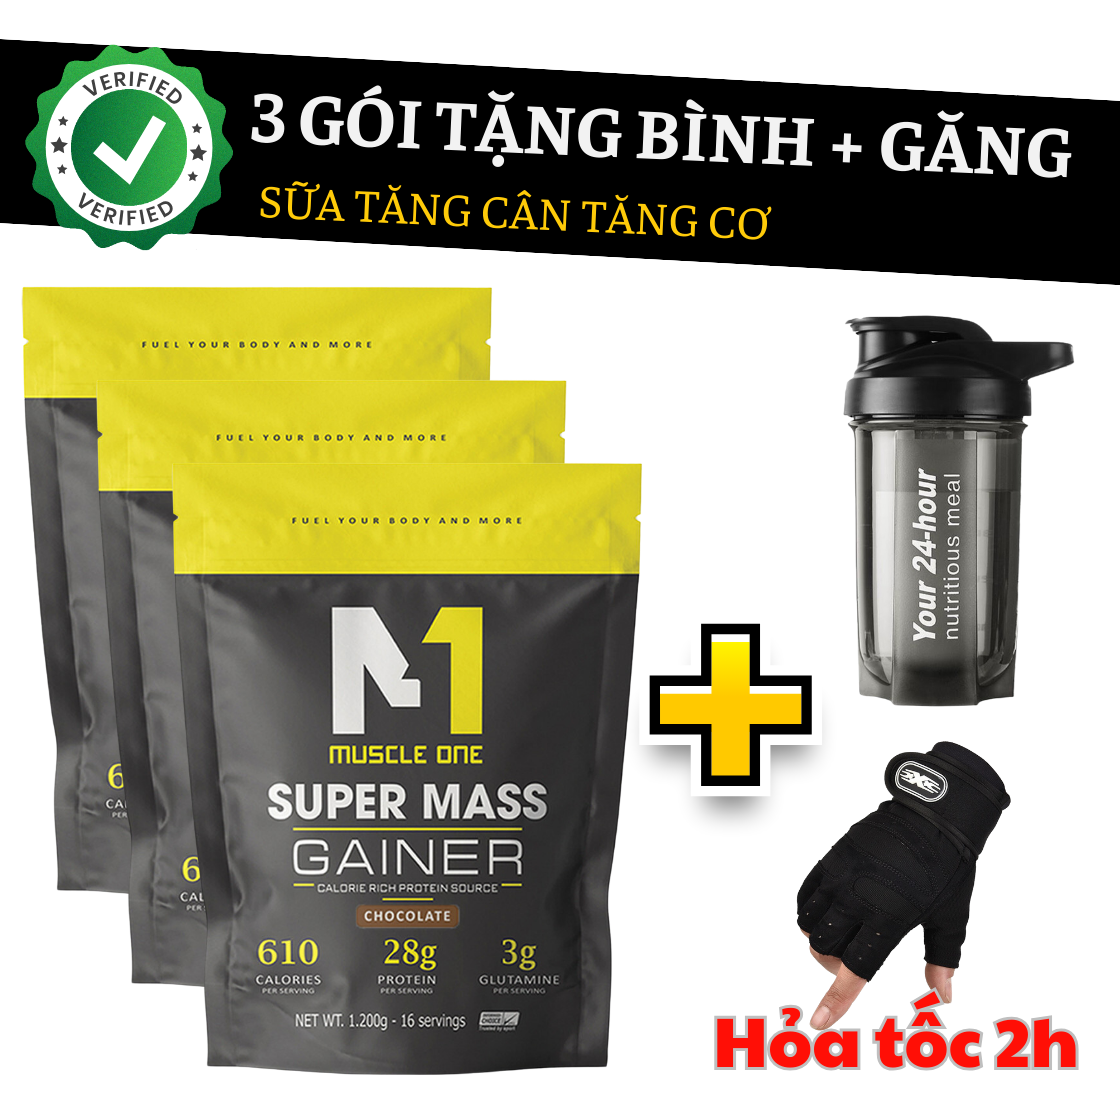 Super mass gainer 3.6kg muscle gain milk free bottle + glove